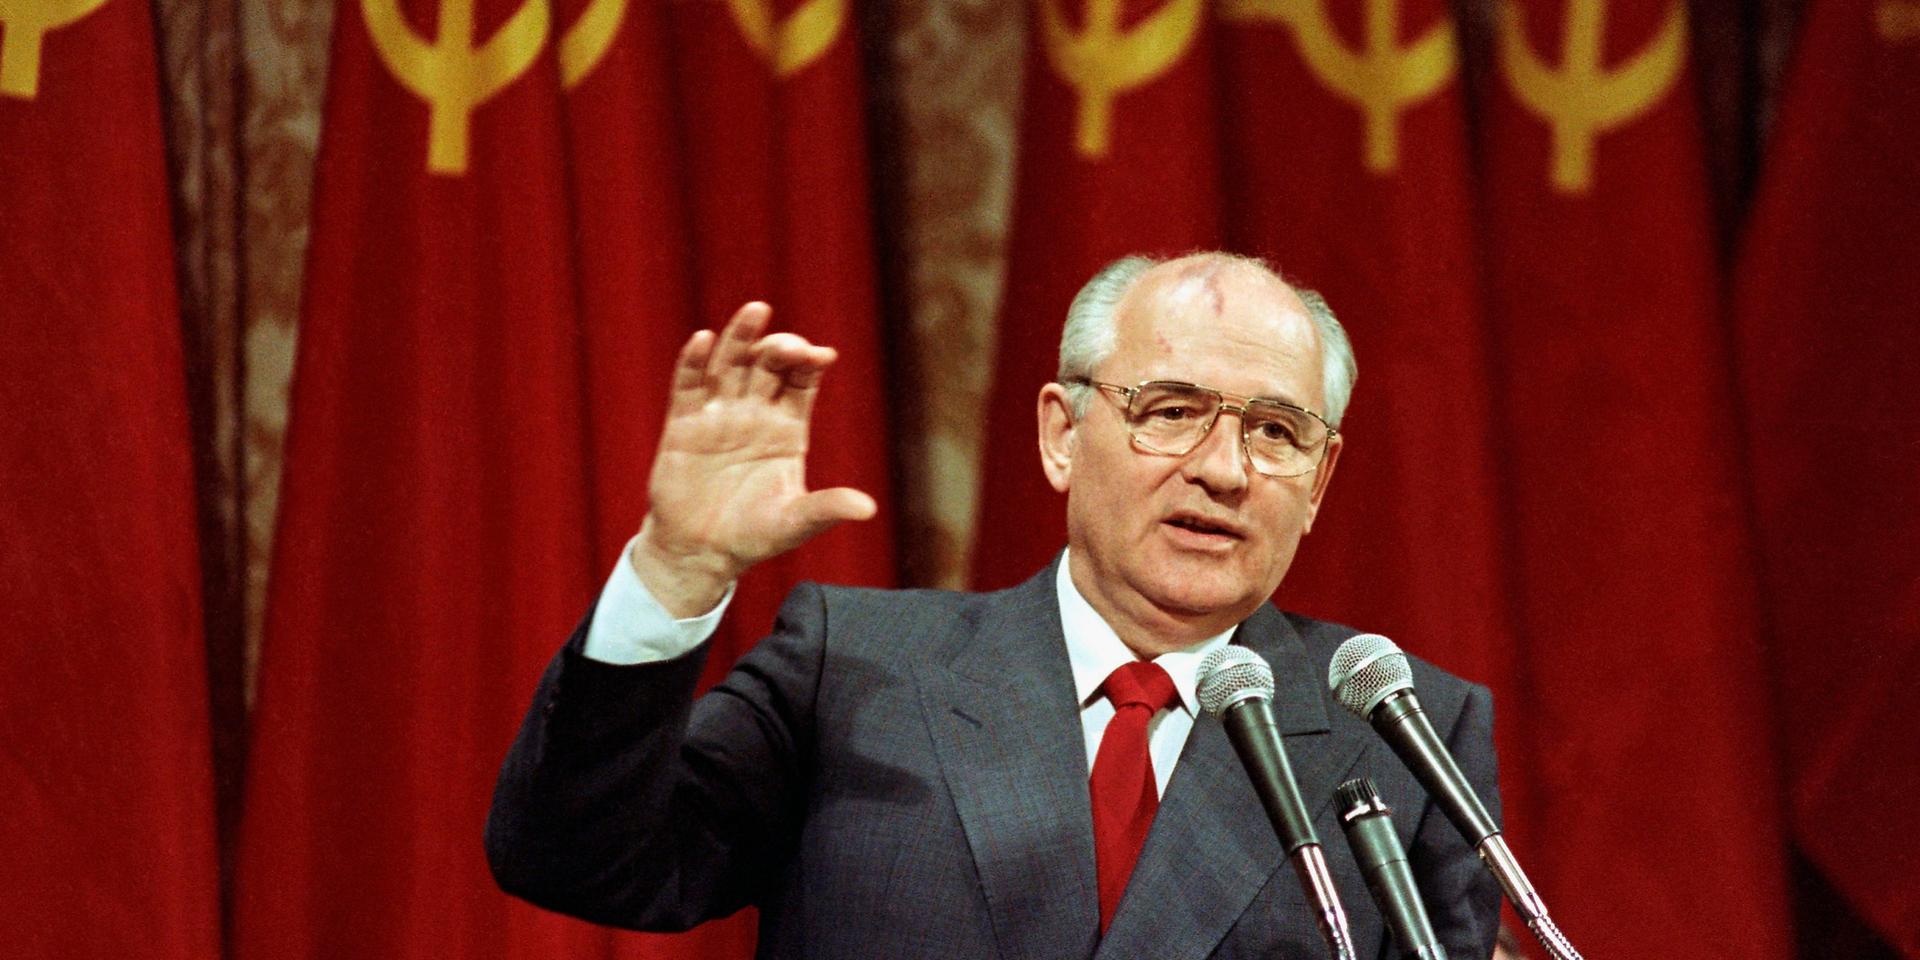 Sovjetunionens sista ledare Michail Gorbatjov blev 91 år gammal. Bilden togs då han höll tal i San Francisco den 5 juni 1990.